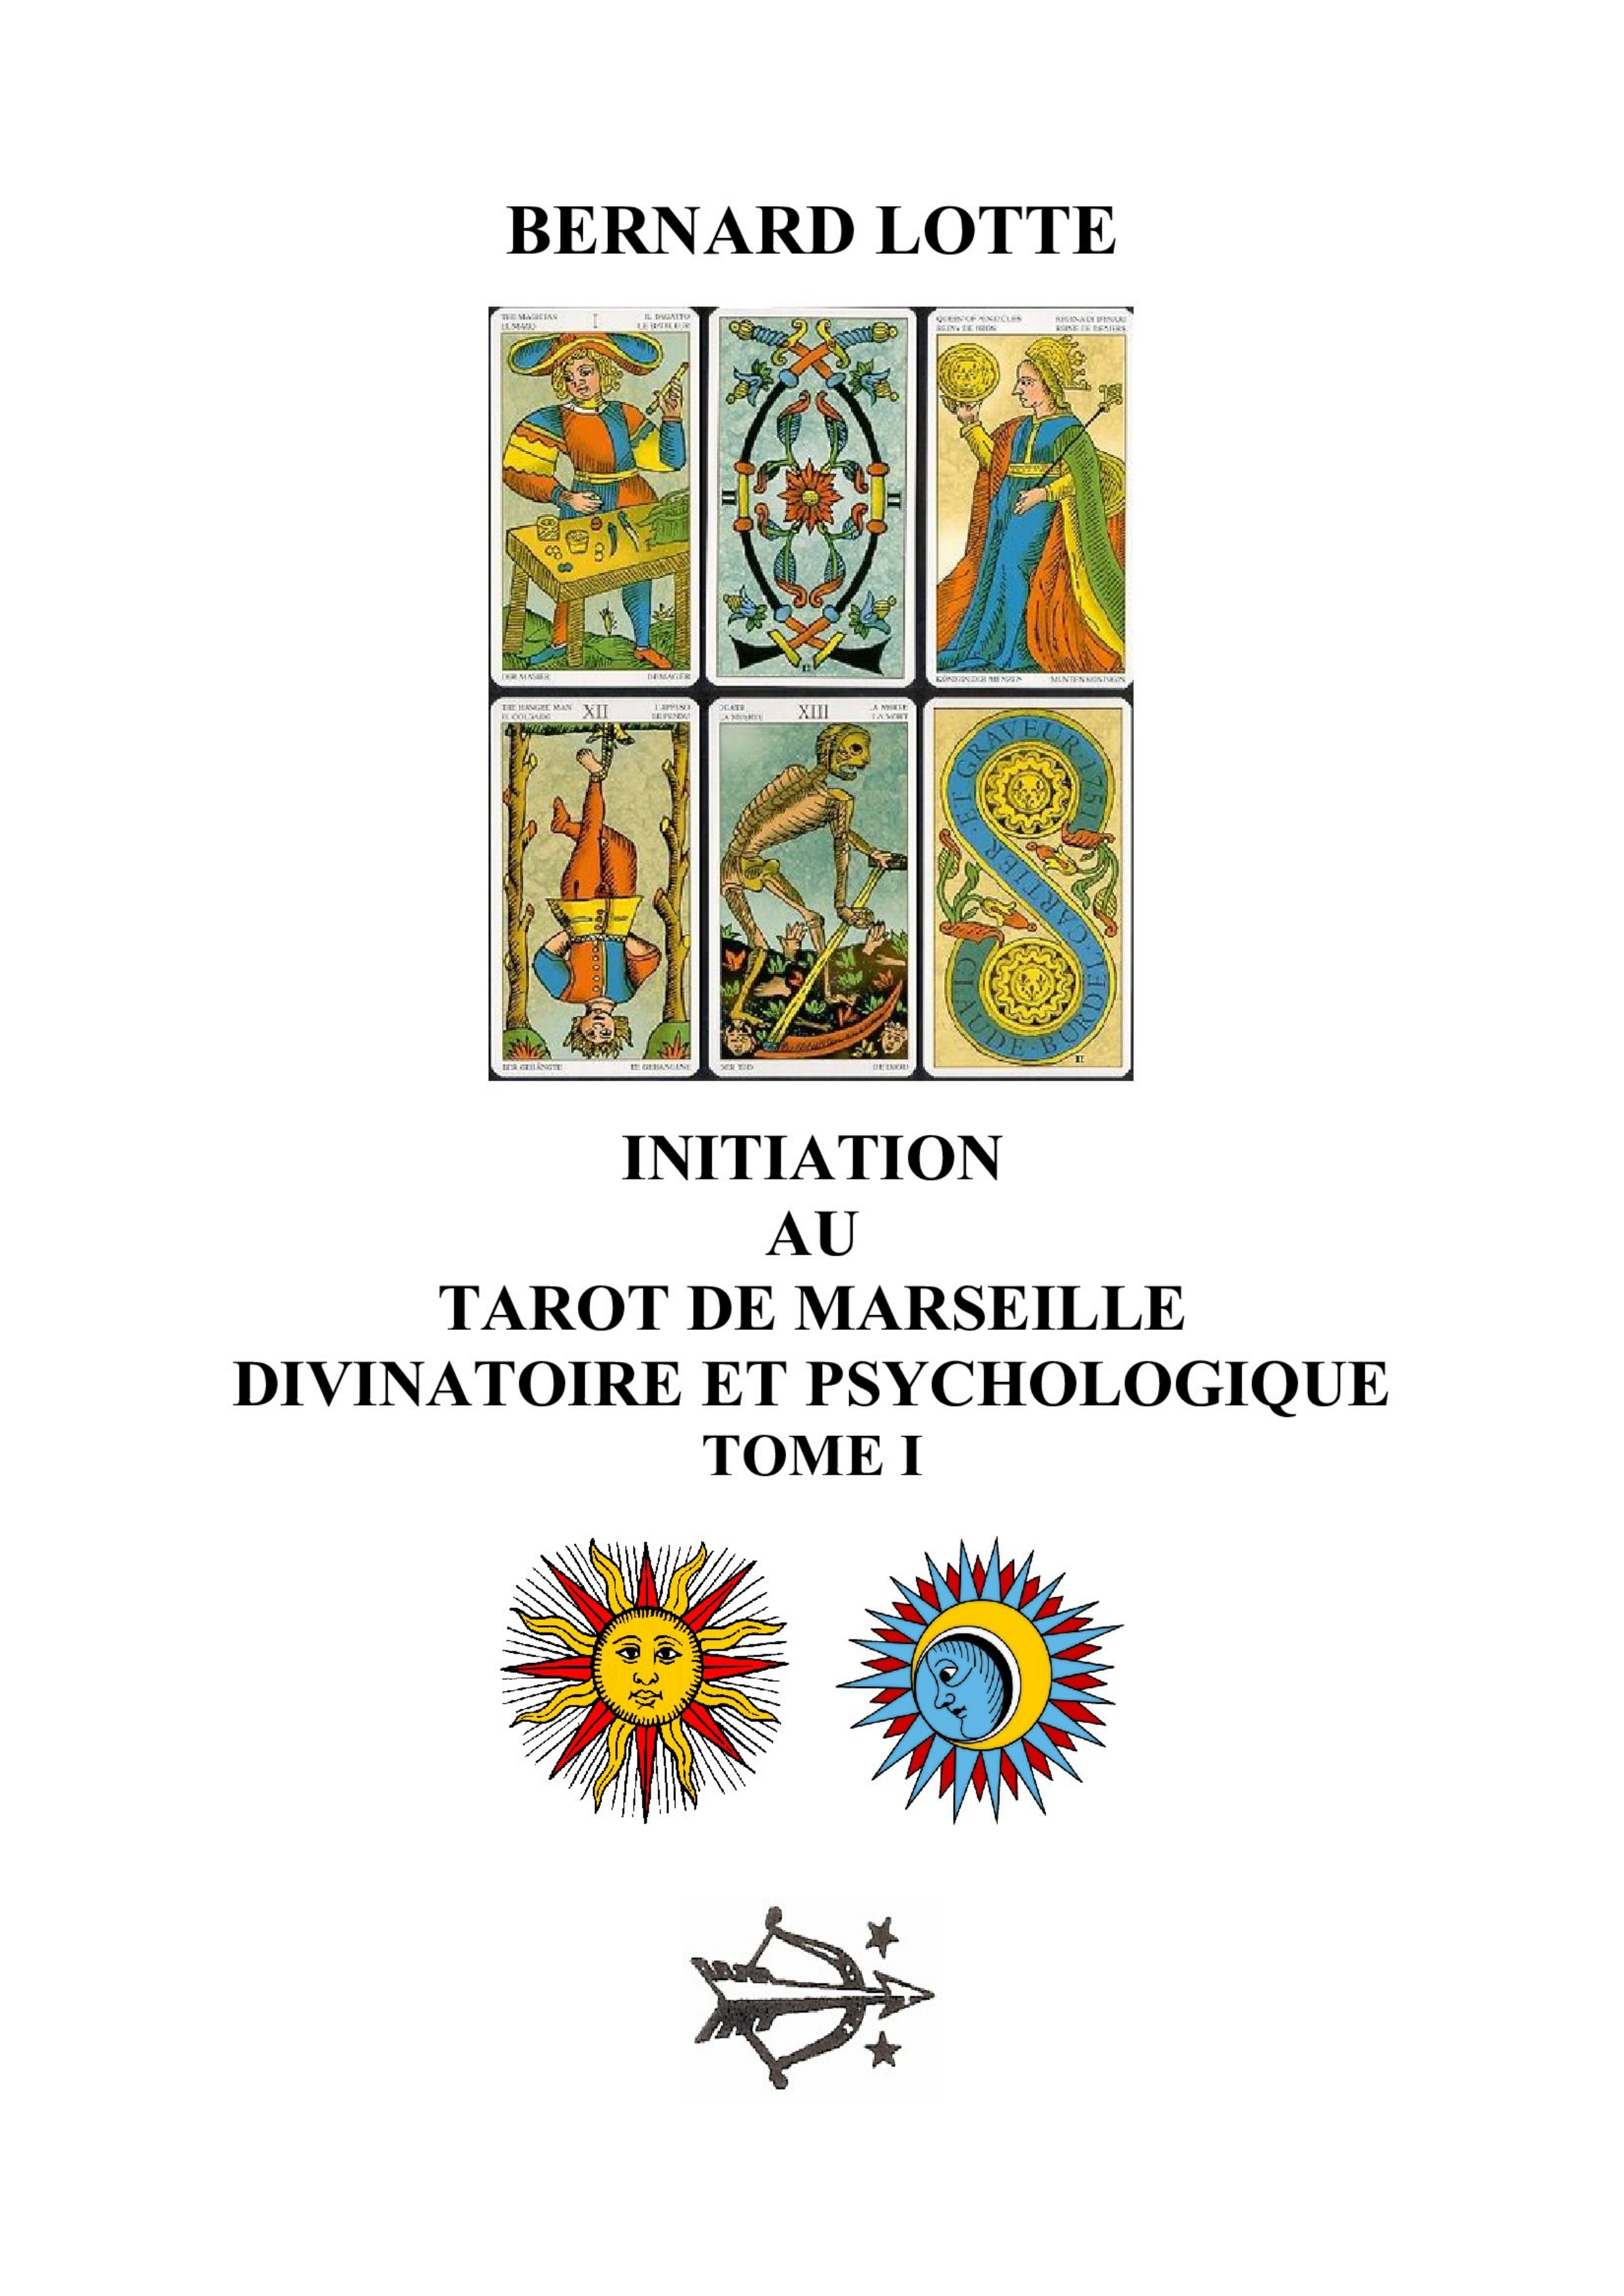 Initiation au Tarot de Marseille - Bernard LOTTE